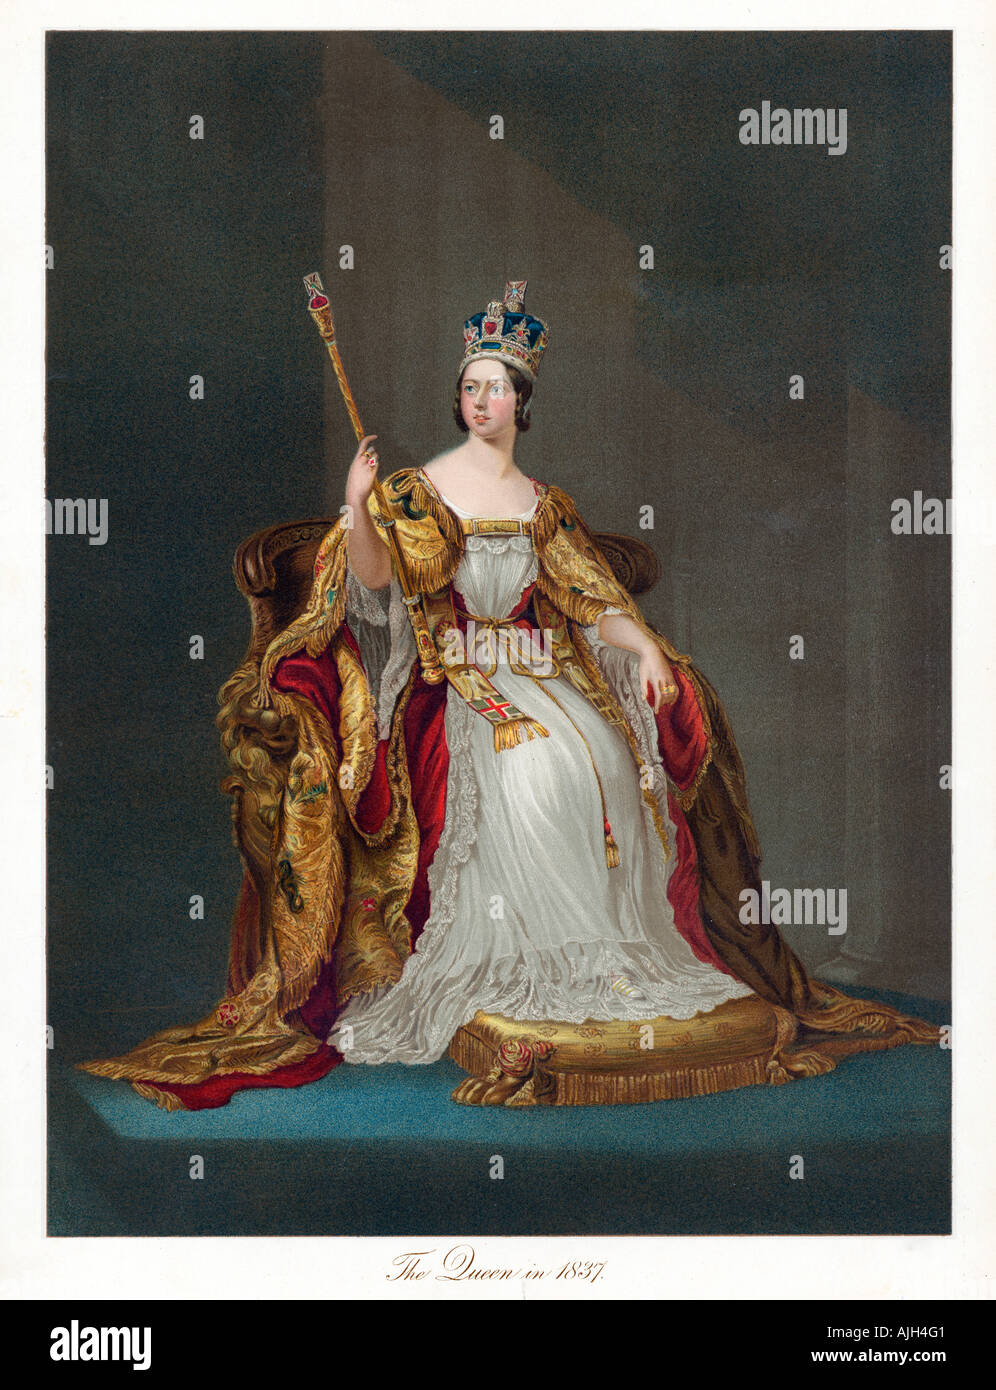 La reina Victoria en 1837, la coronación de retrato de la reina británica desde un souvenir publicado para celebrar su jubileo de oro en 1887 Foto de stock